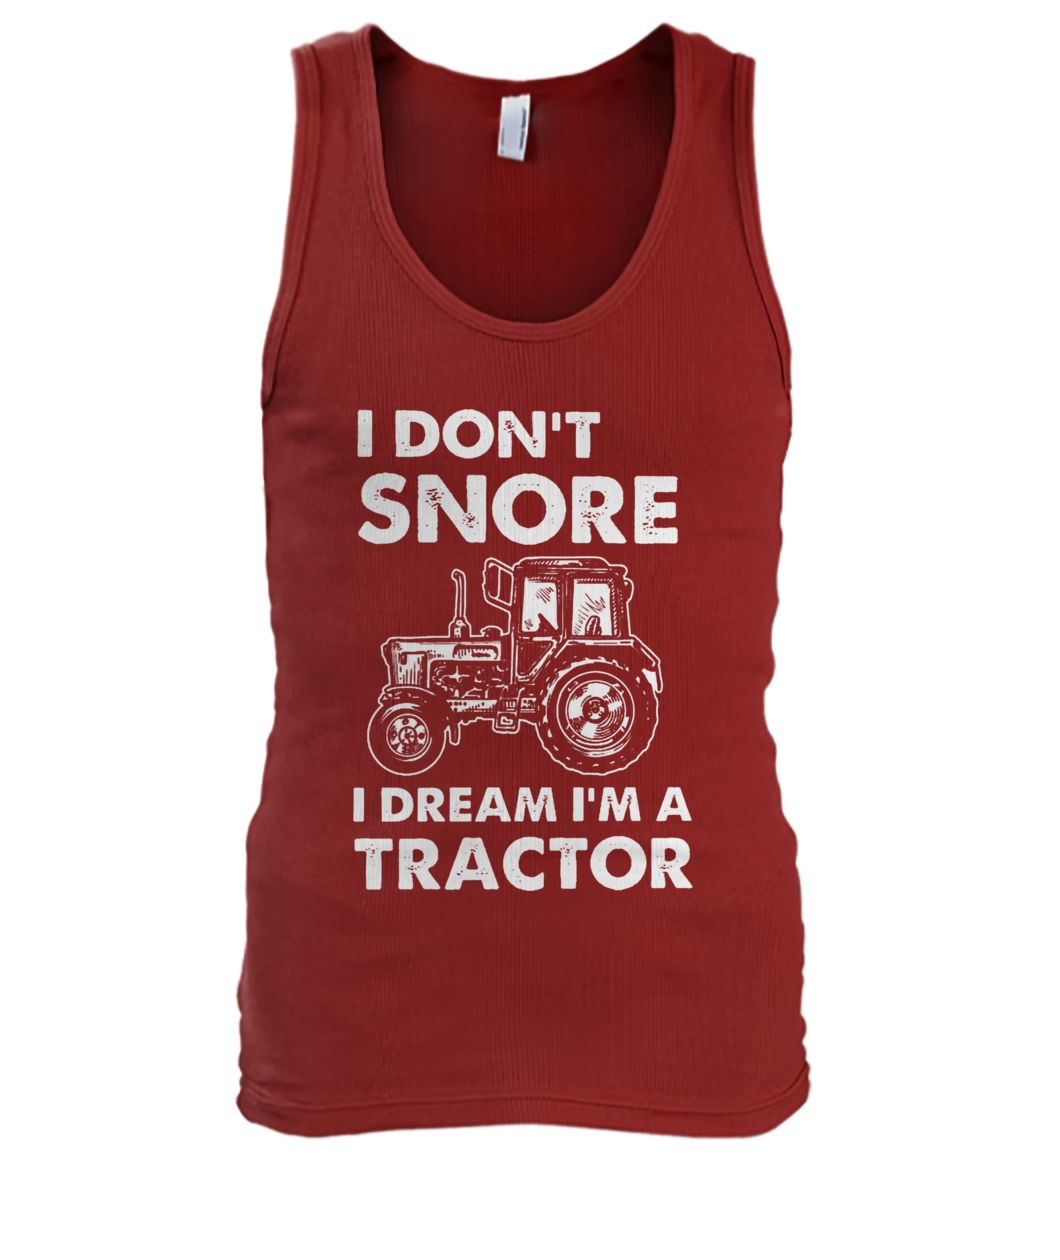 I don't snore I dream I'm a tractor men's tank top